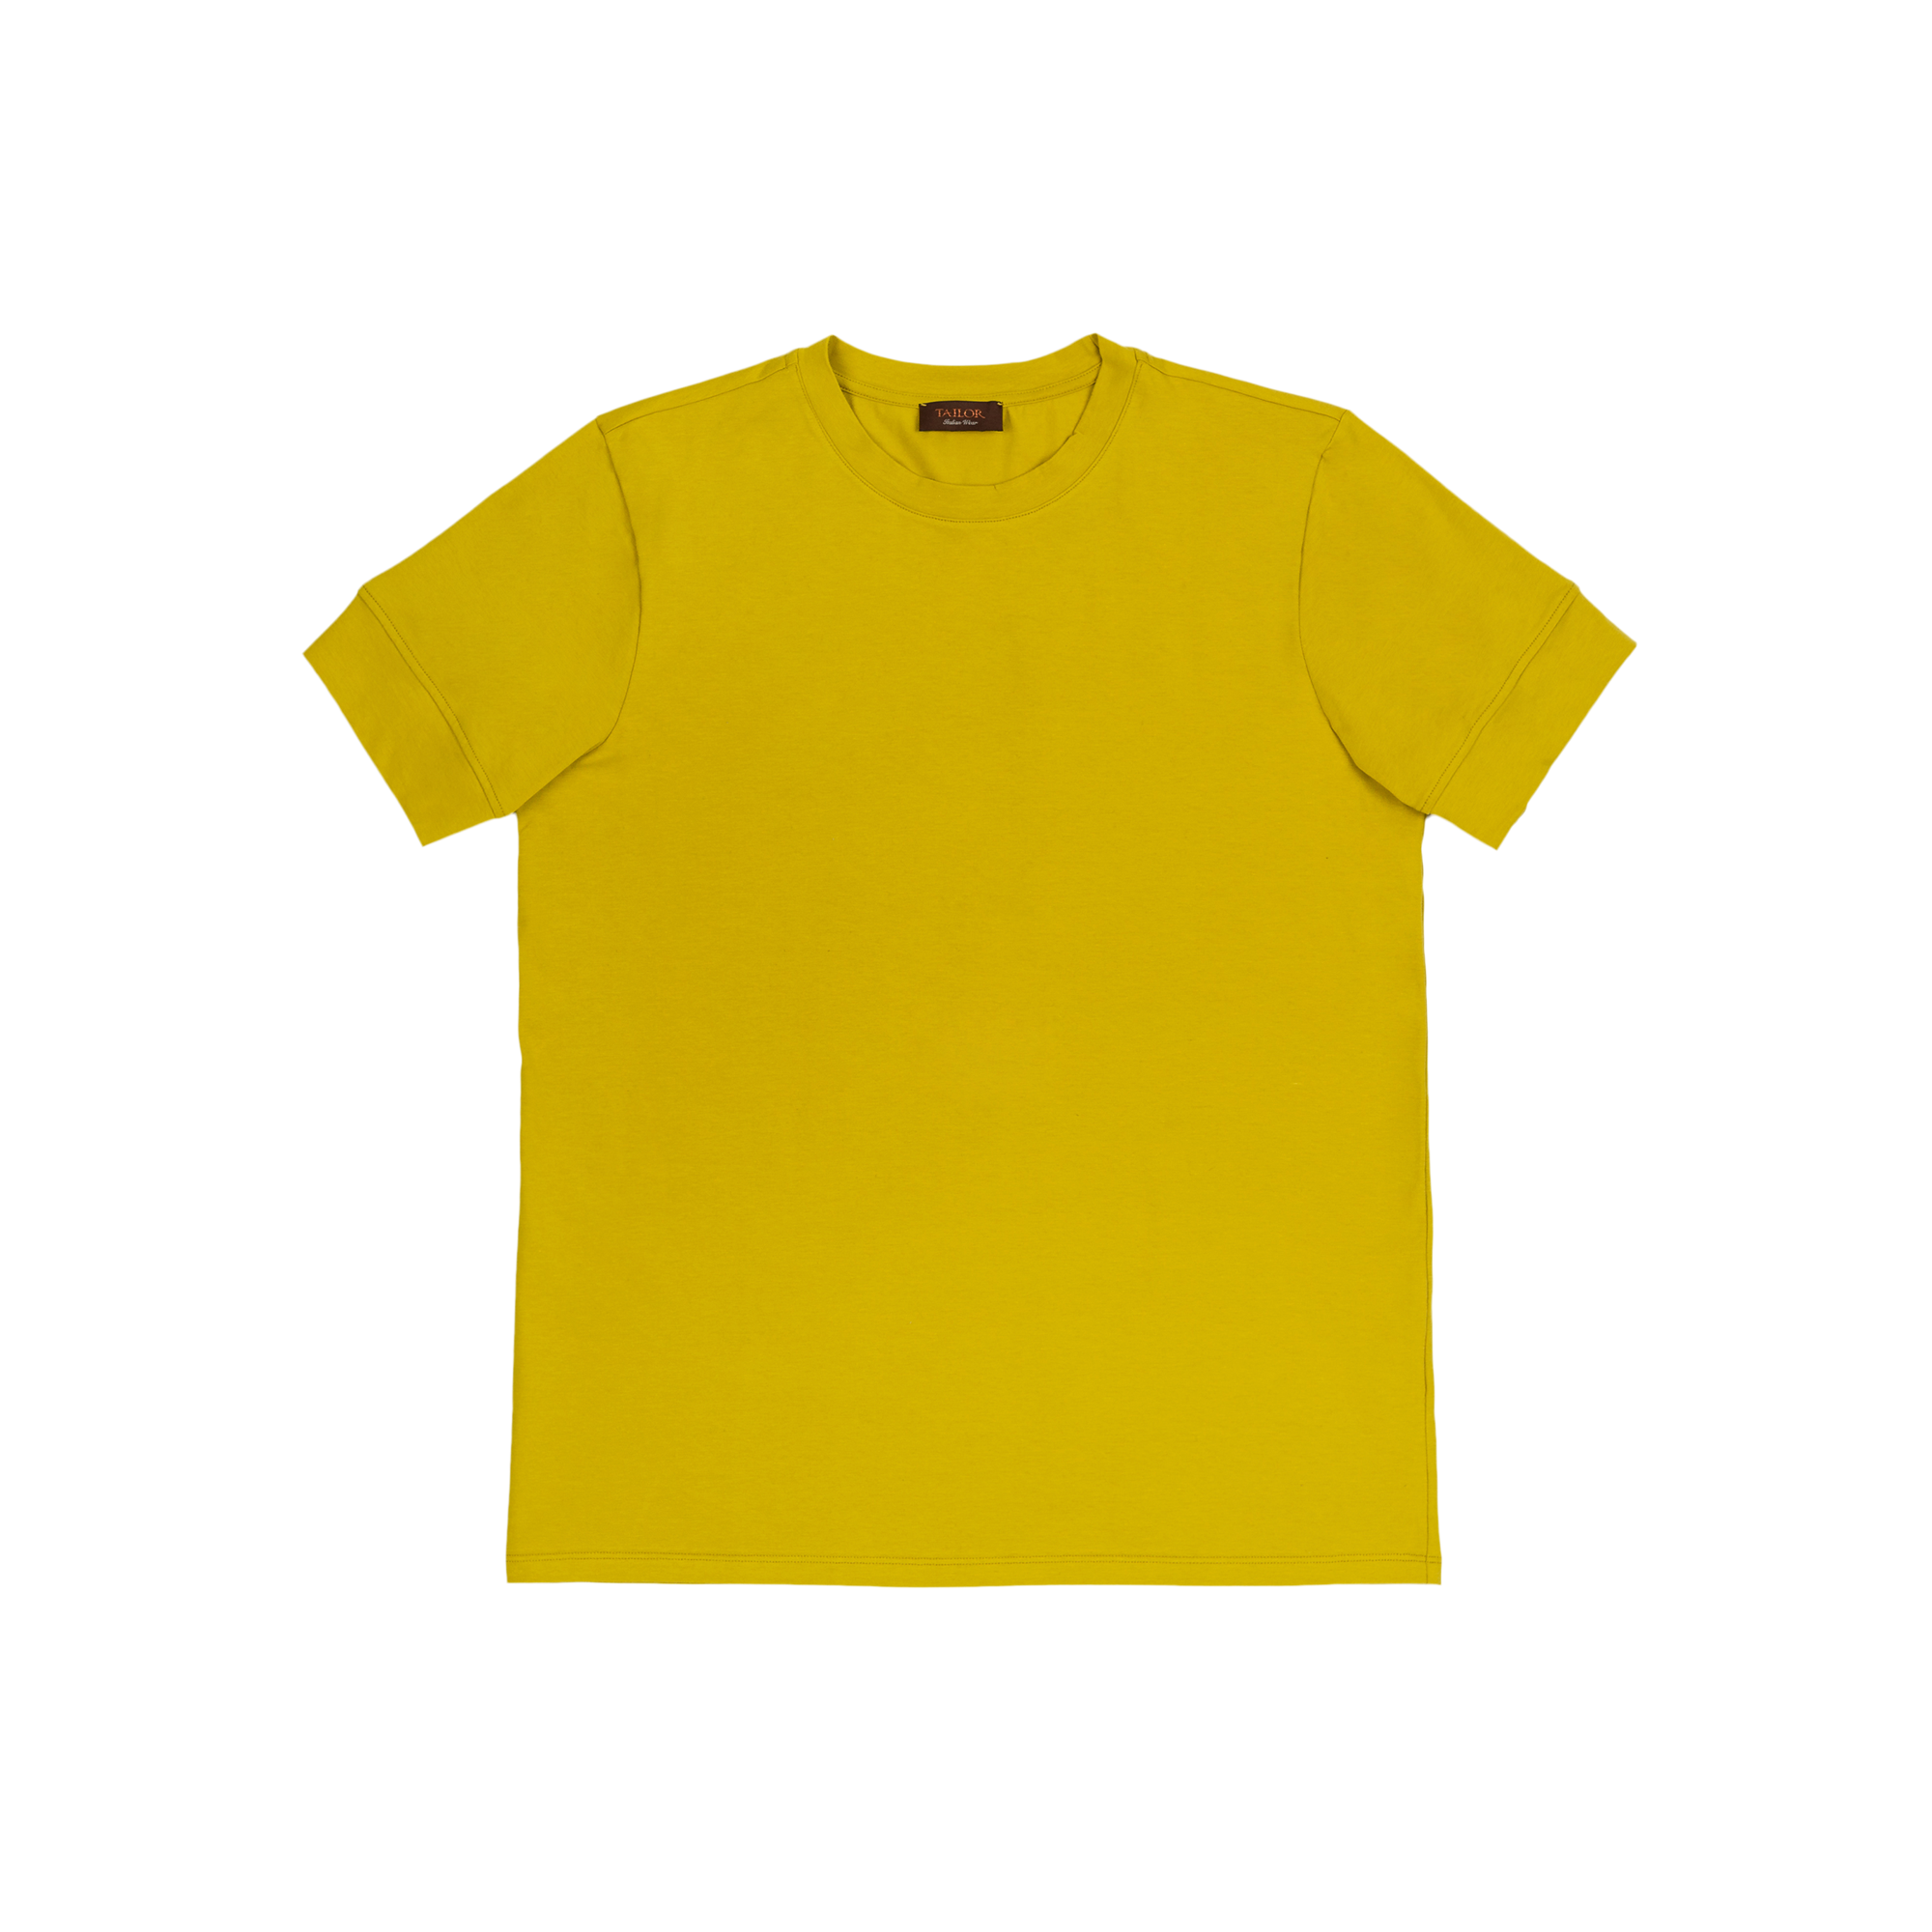 Ανδρικό Κίτρινο T-shirt